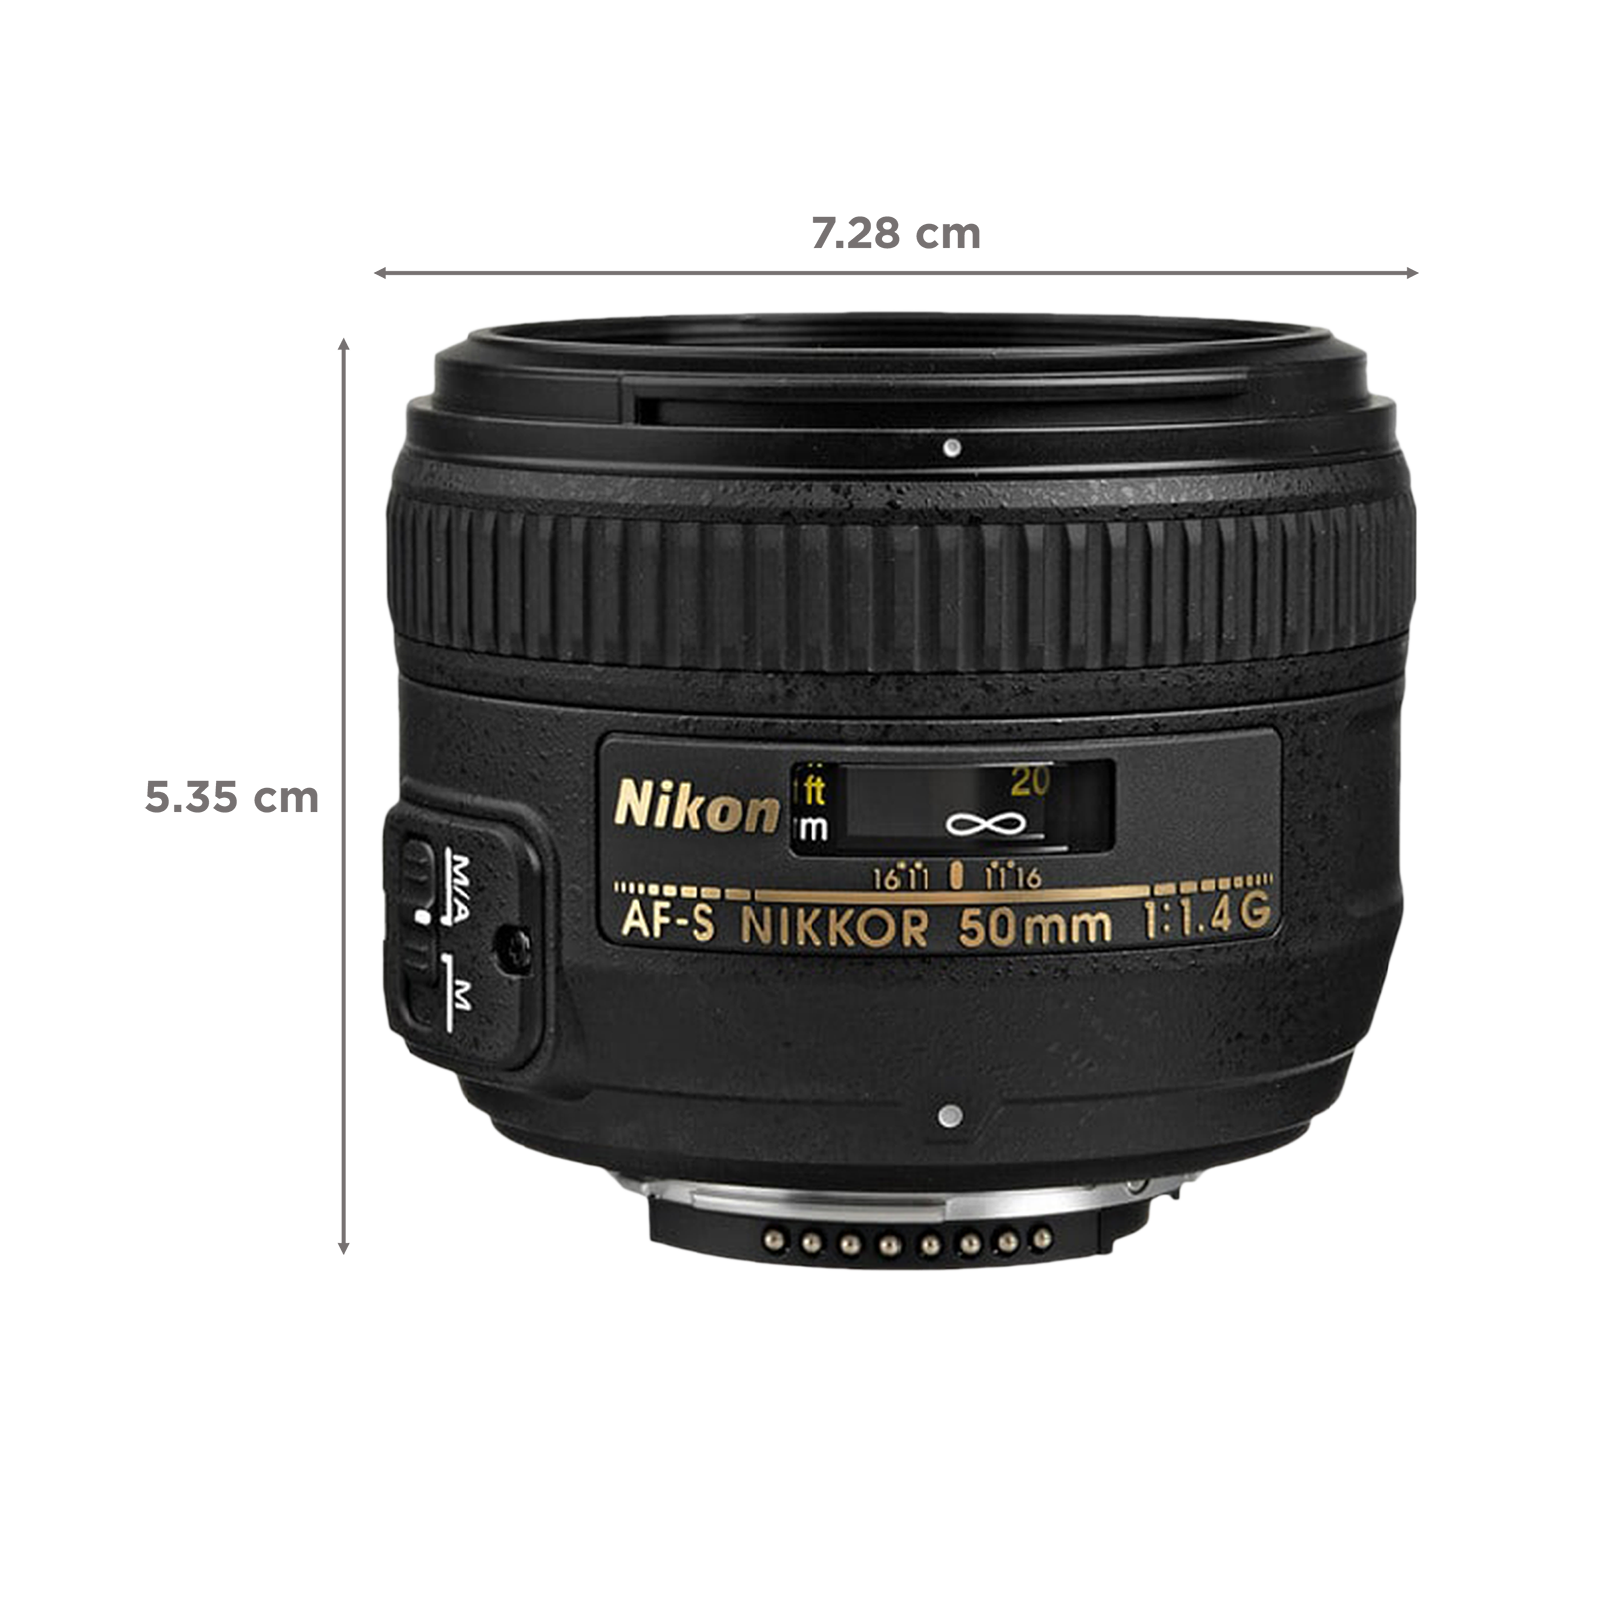 Buy Nikon AF-S NIKKOR 50mm f/1.4 - f/16 Standard Prime Lens for 